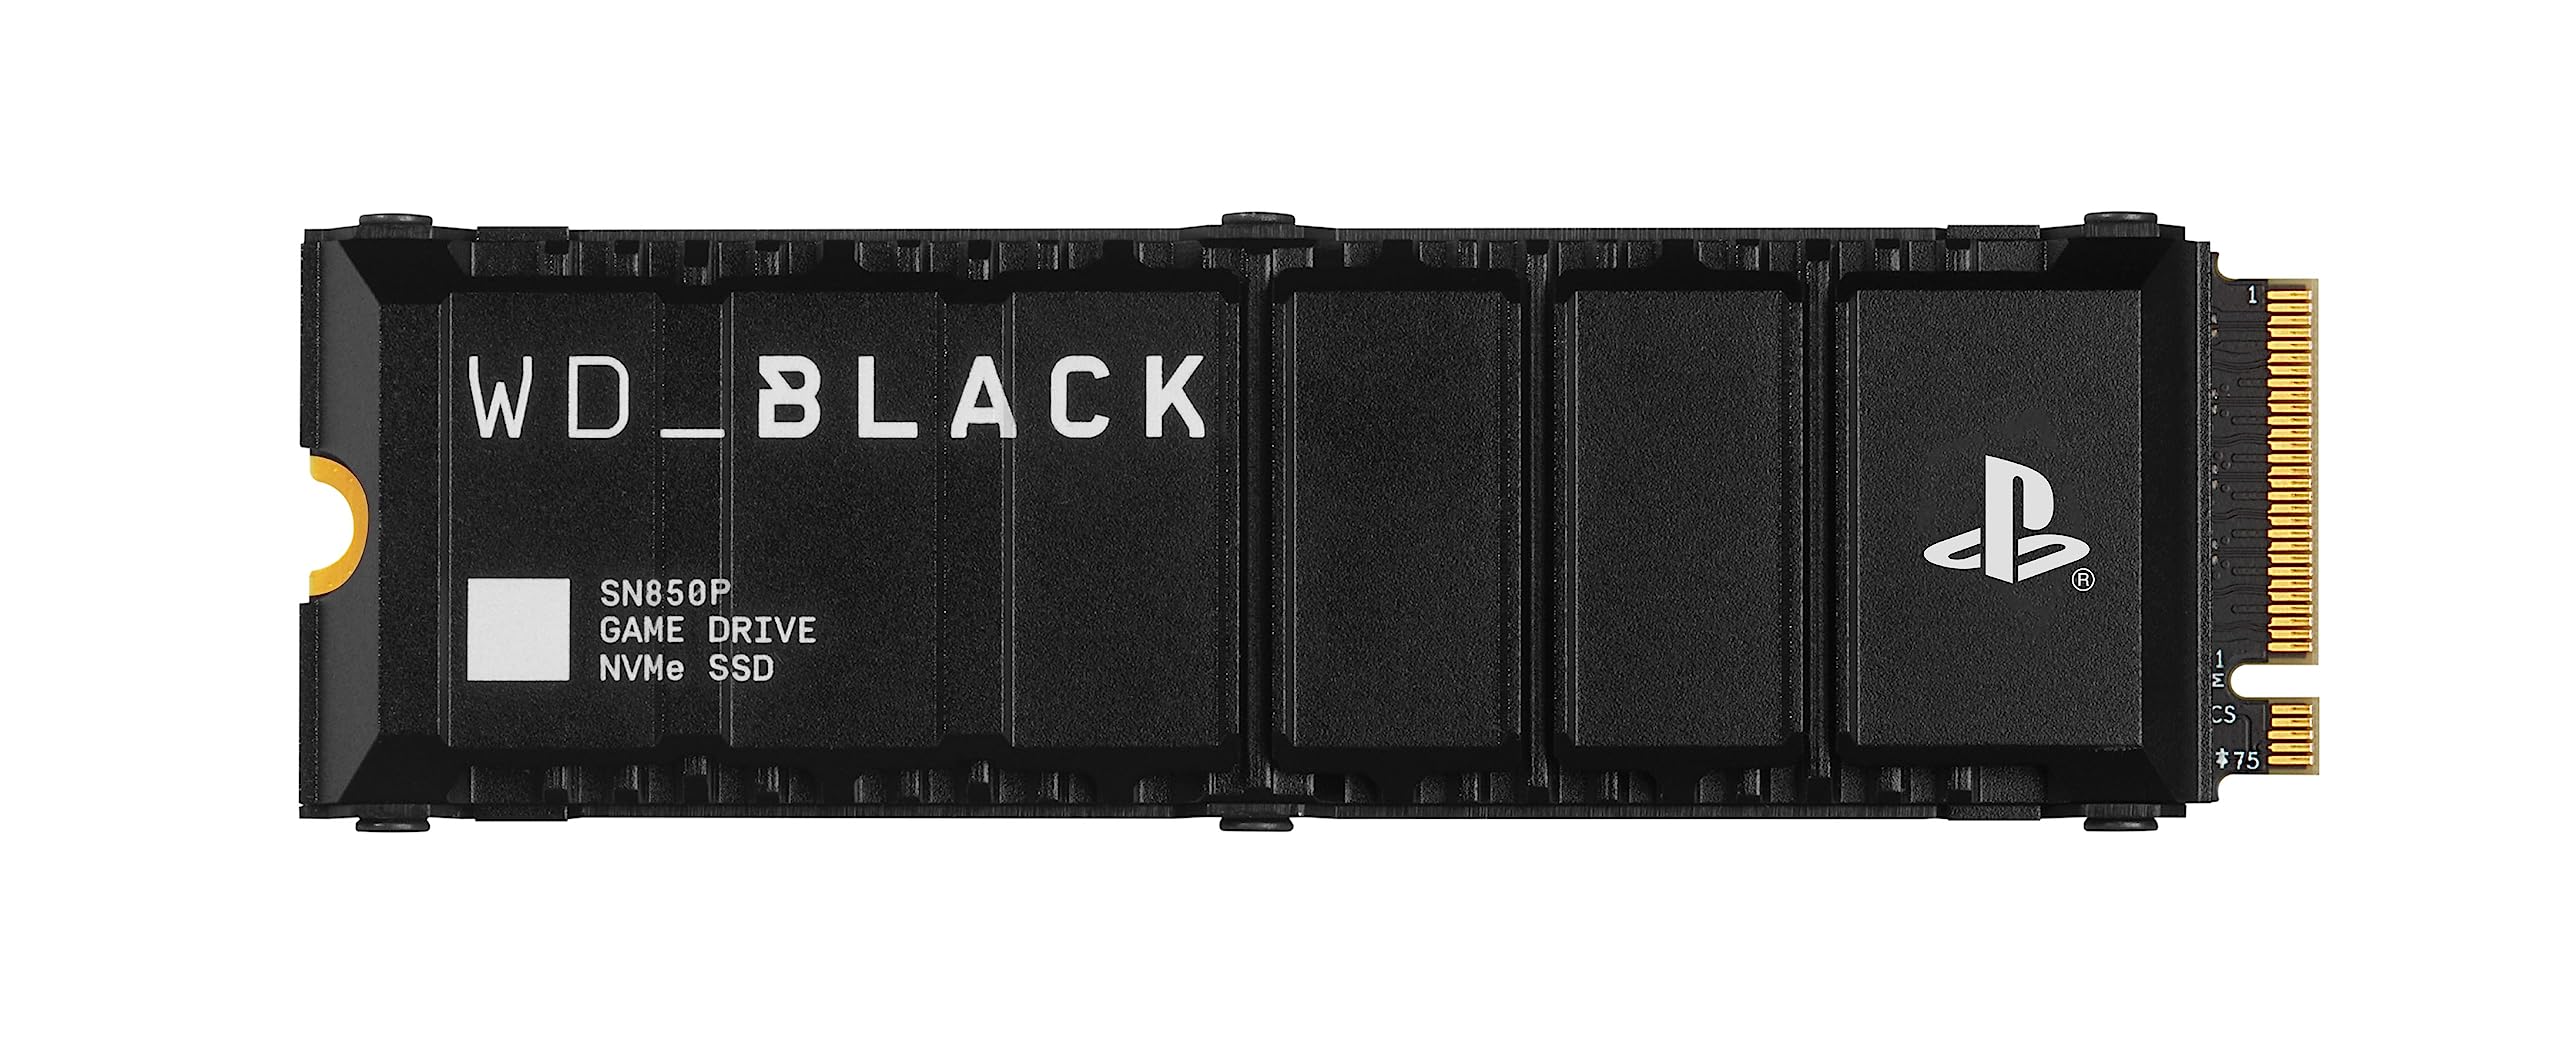 WD_BLACK SN850P 1 TB NVMe SSD Offiziell Lizenziert für PS5 Konsolen (interne Gaming SSD; optimierter Kühlkörper; PCIe Gen4 Technologie, bis zu 7.300 MB/s Lesen, M.2 2280)